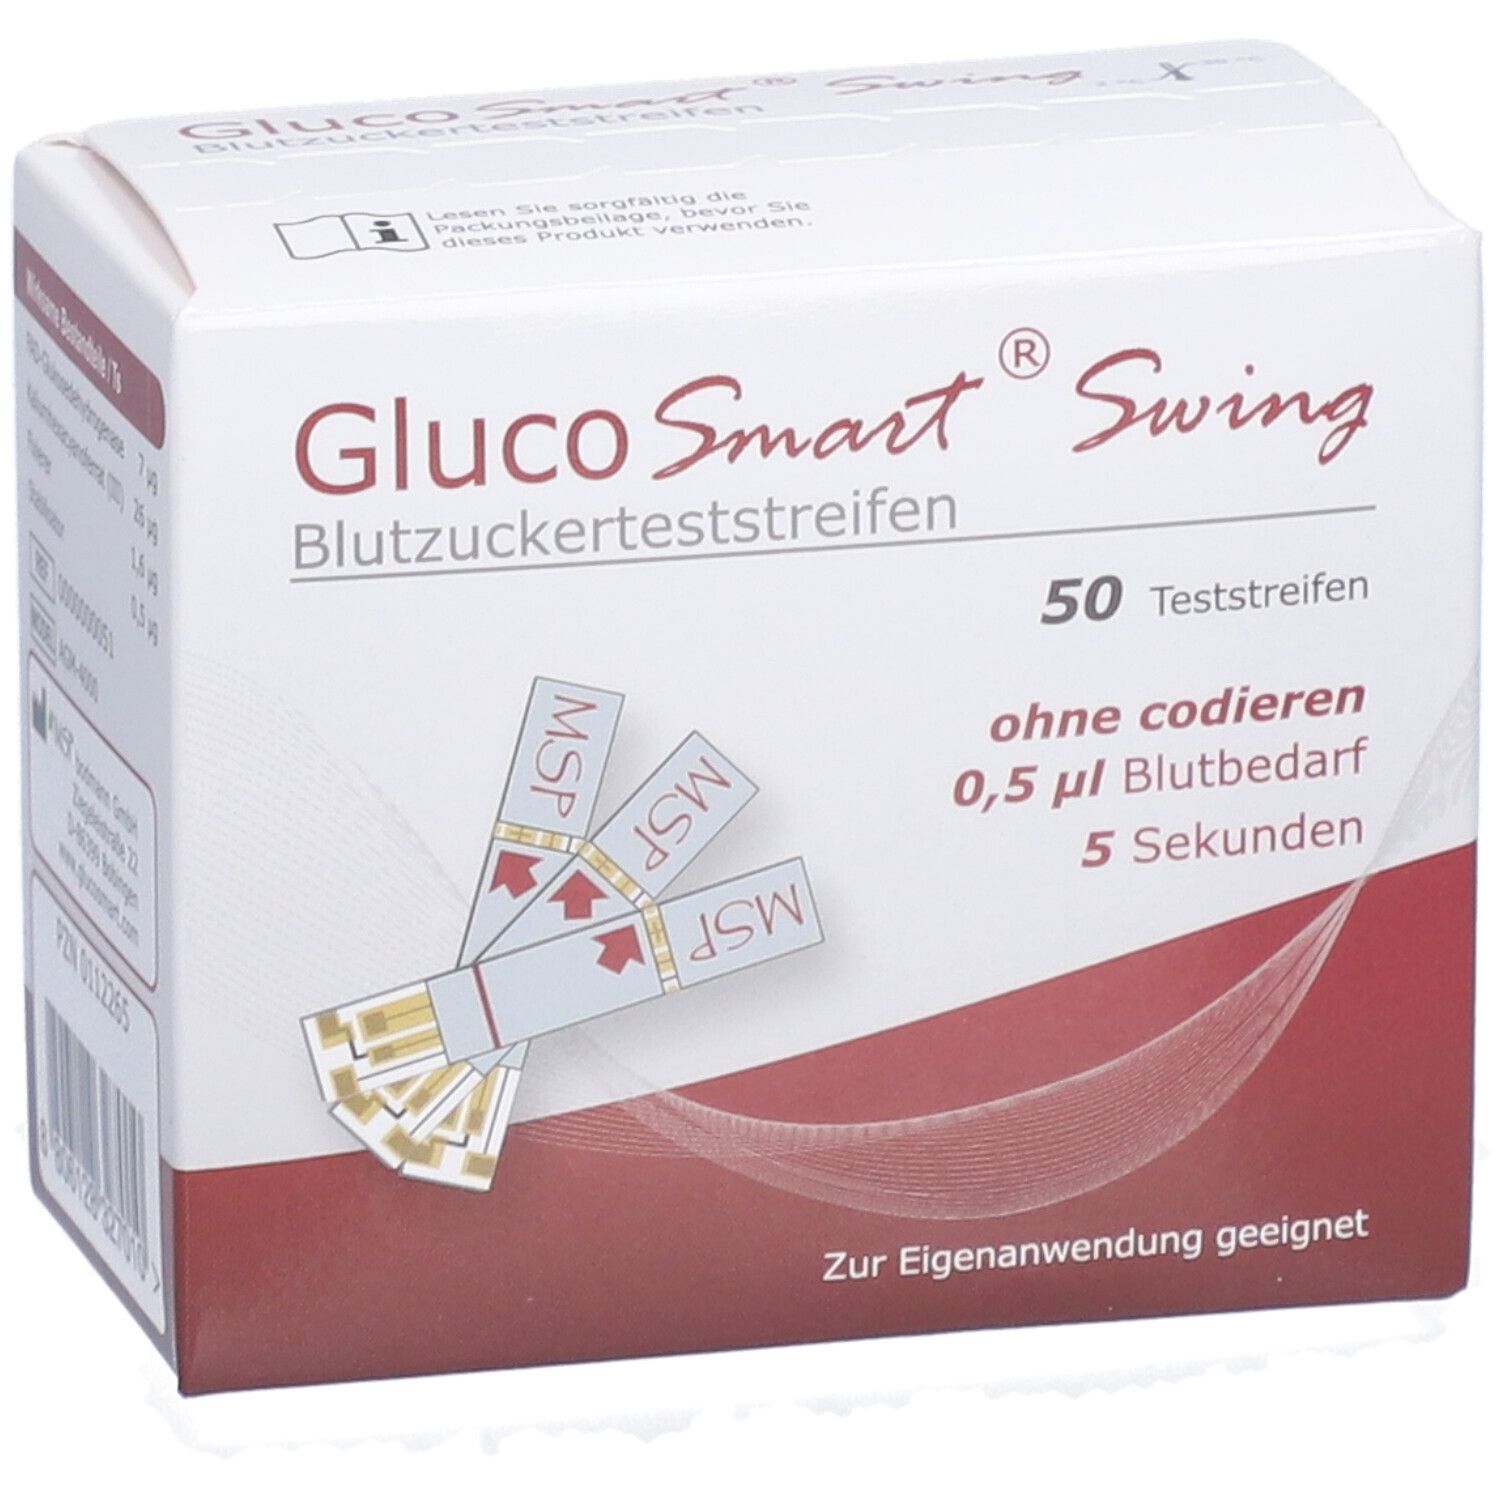 GLUCOSMART® Swing Blutzuckerteststreifen